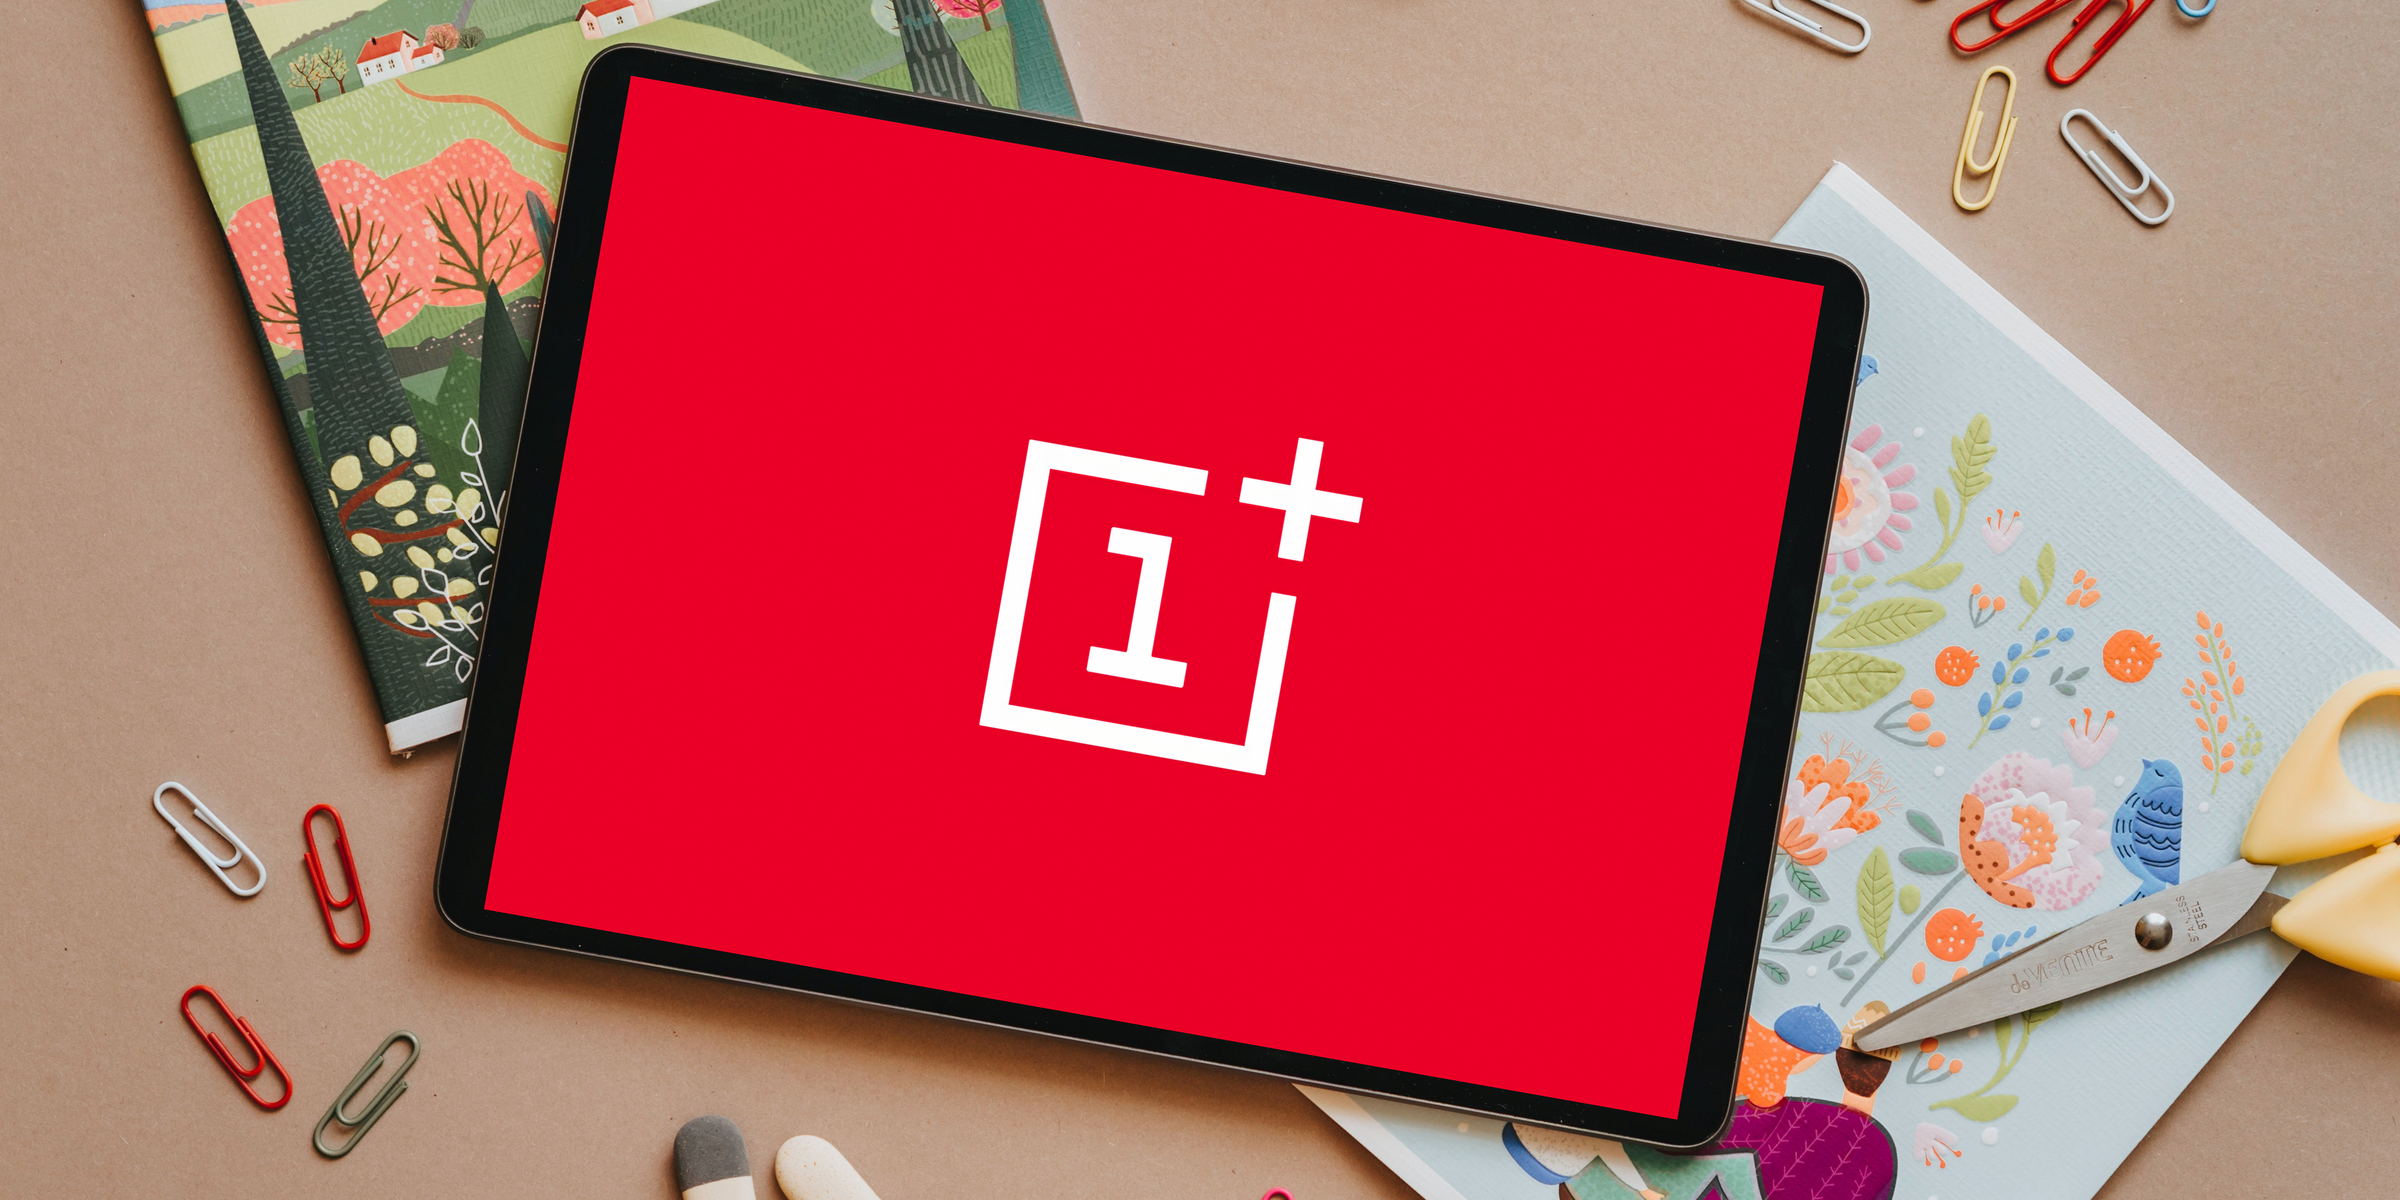 OnePlus pracuje nad swoim pierwszym tabletem, zostanie zaprezentowany w 2022 roku